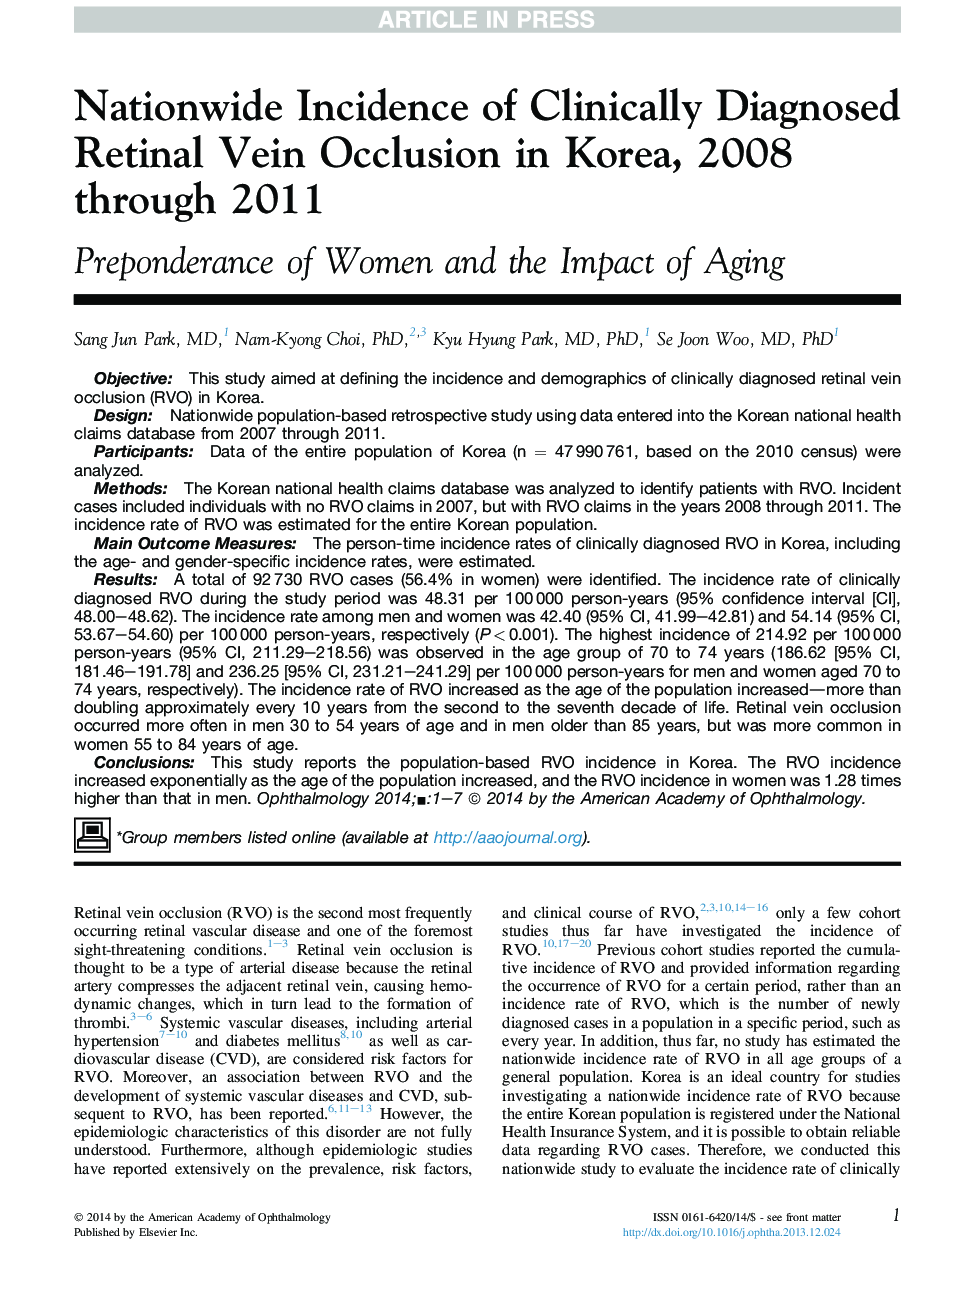 بروز بیماری های ناشی از بیماری های غدد درون ریز در کره 2008-2008 